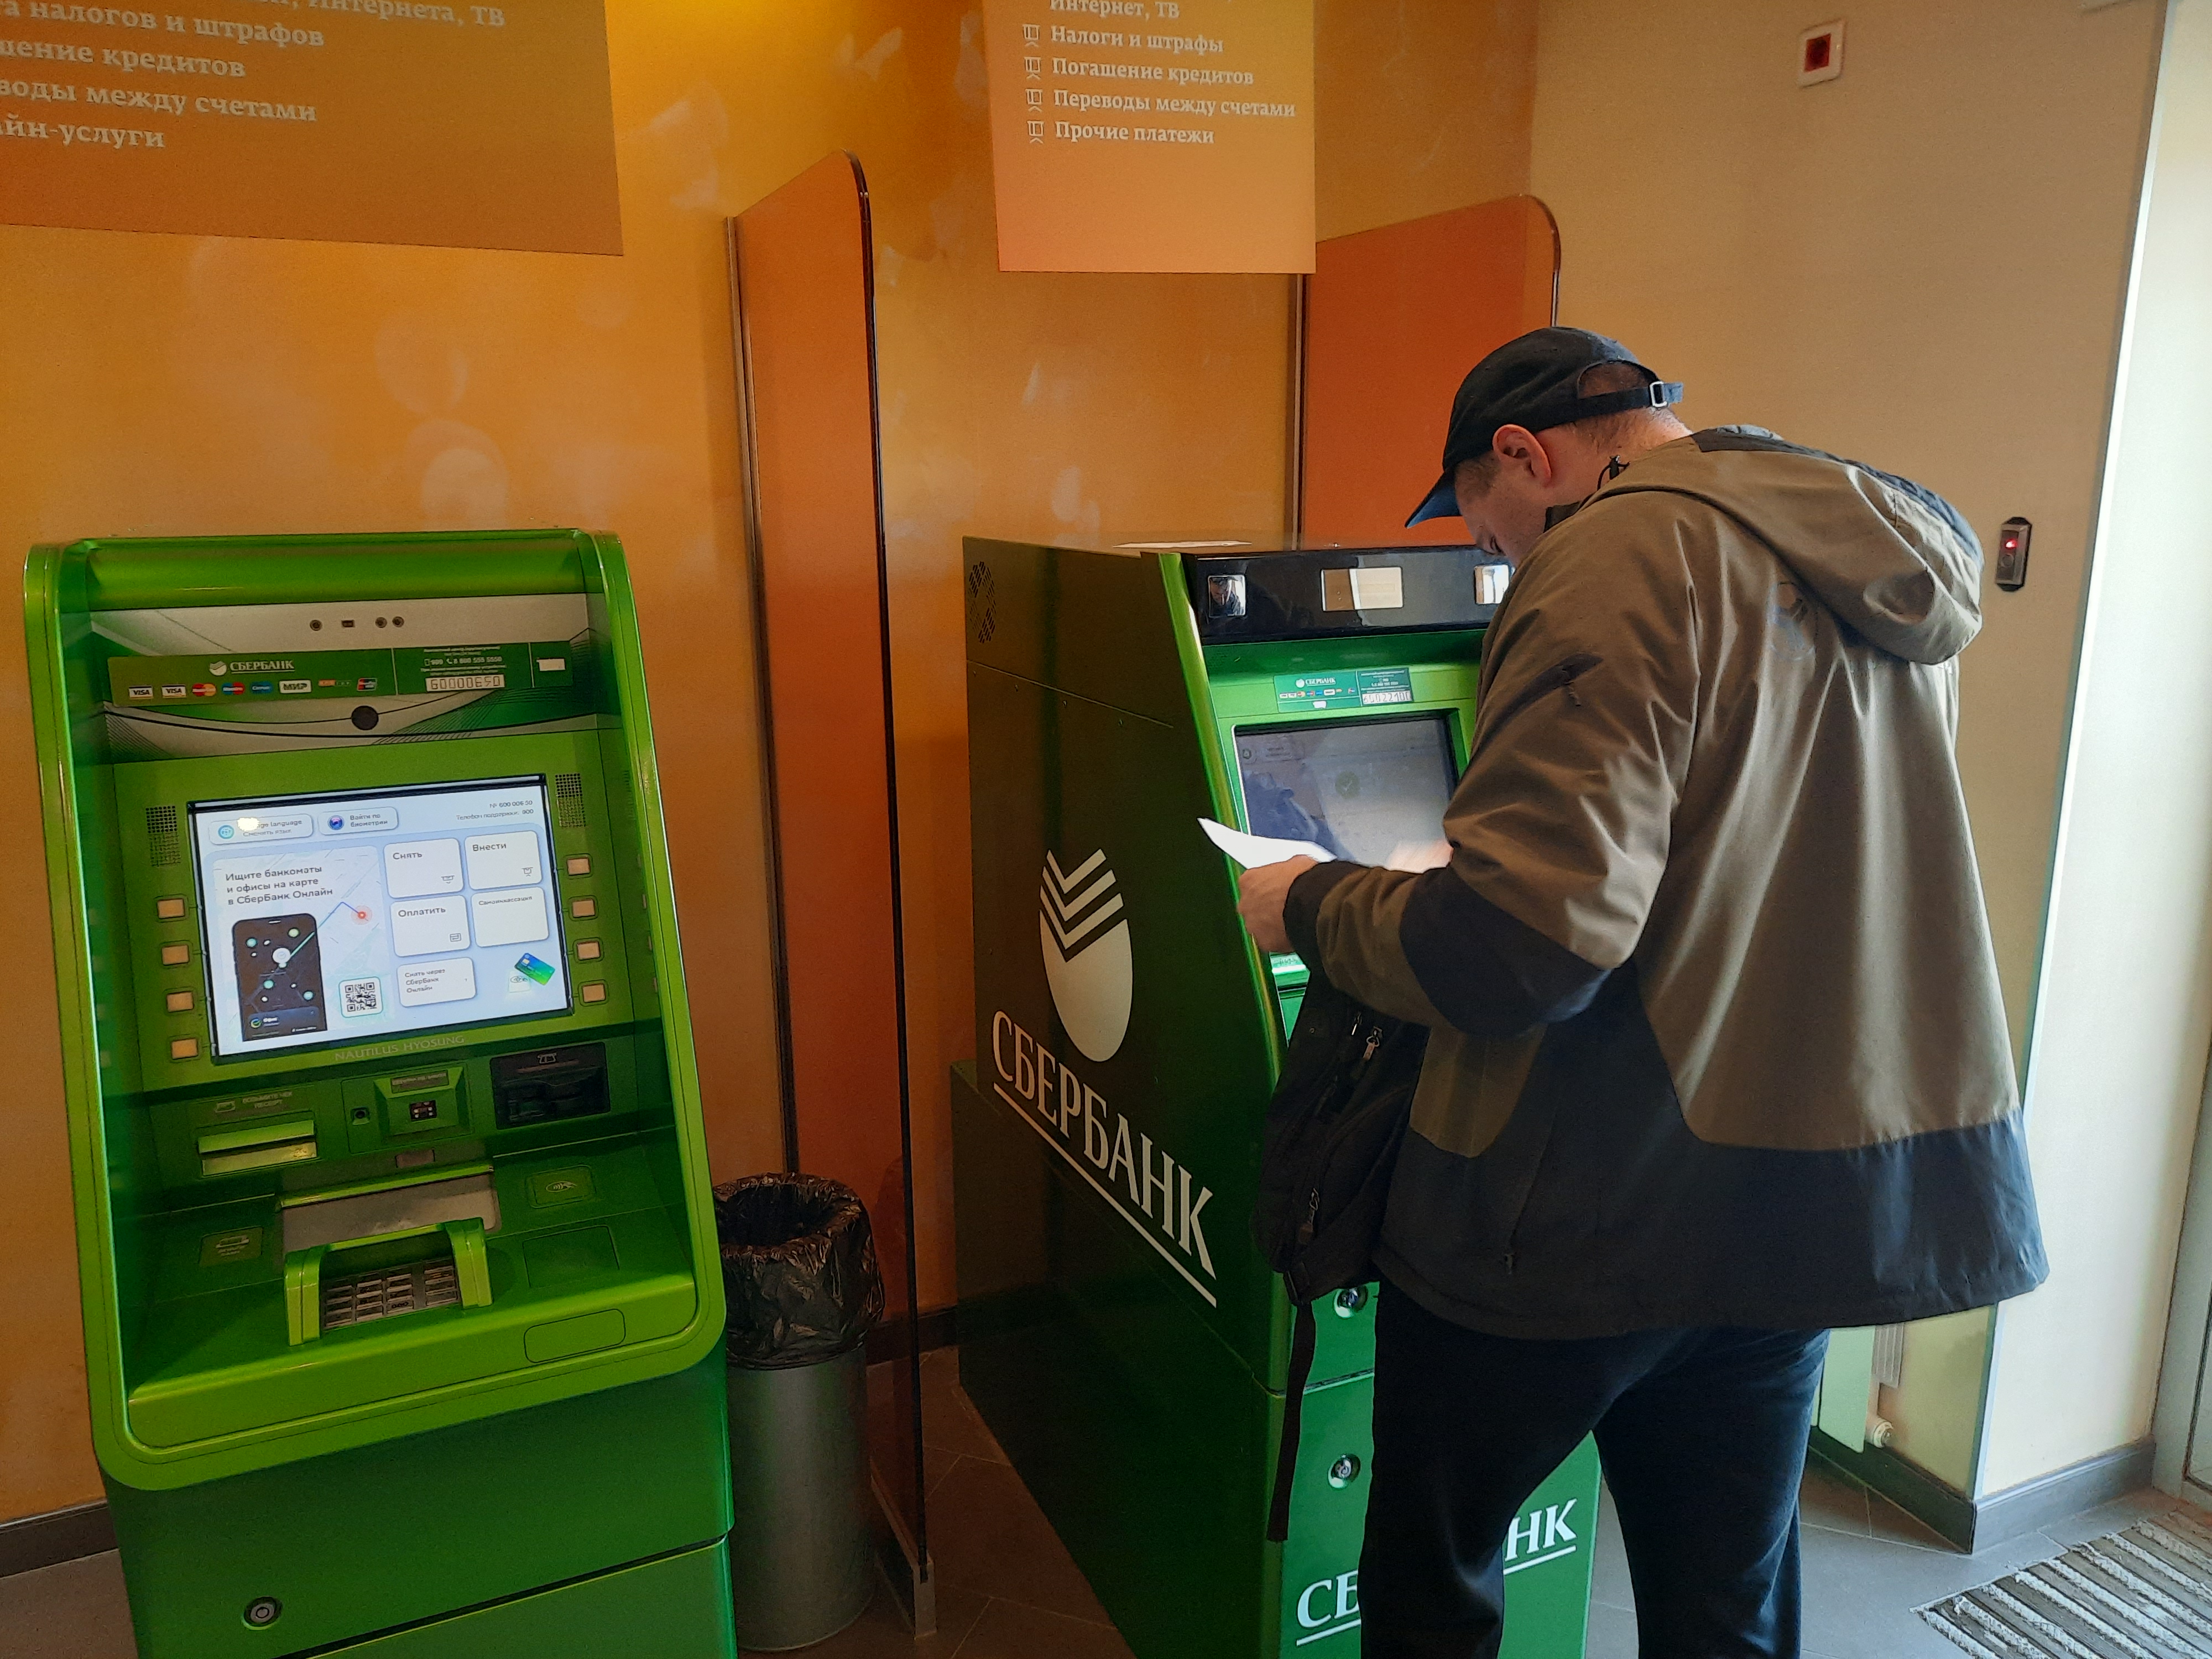 Закрыты офисы сбербанка. Банкомат. Фото банкомата Сбербанка. Зелёный день в Сбербанке. Сбербанк станция колонка.